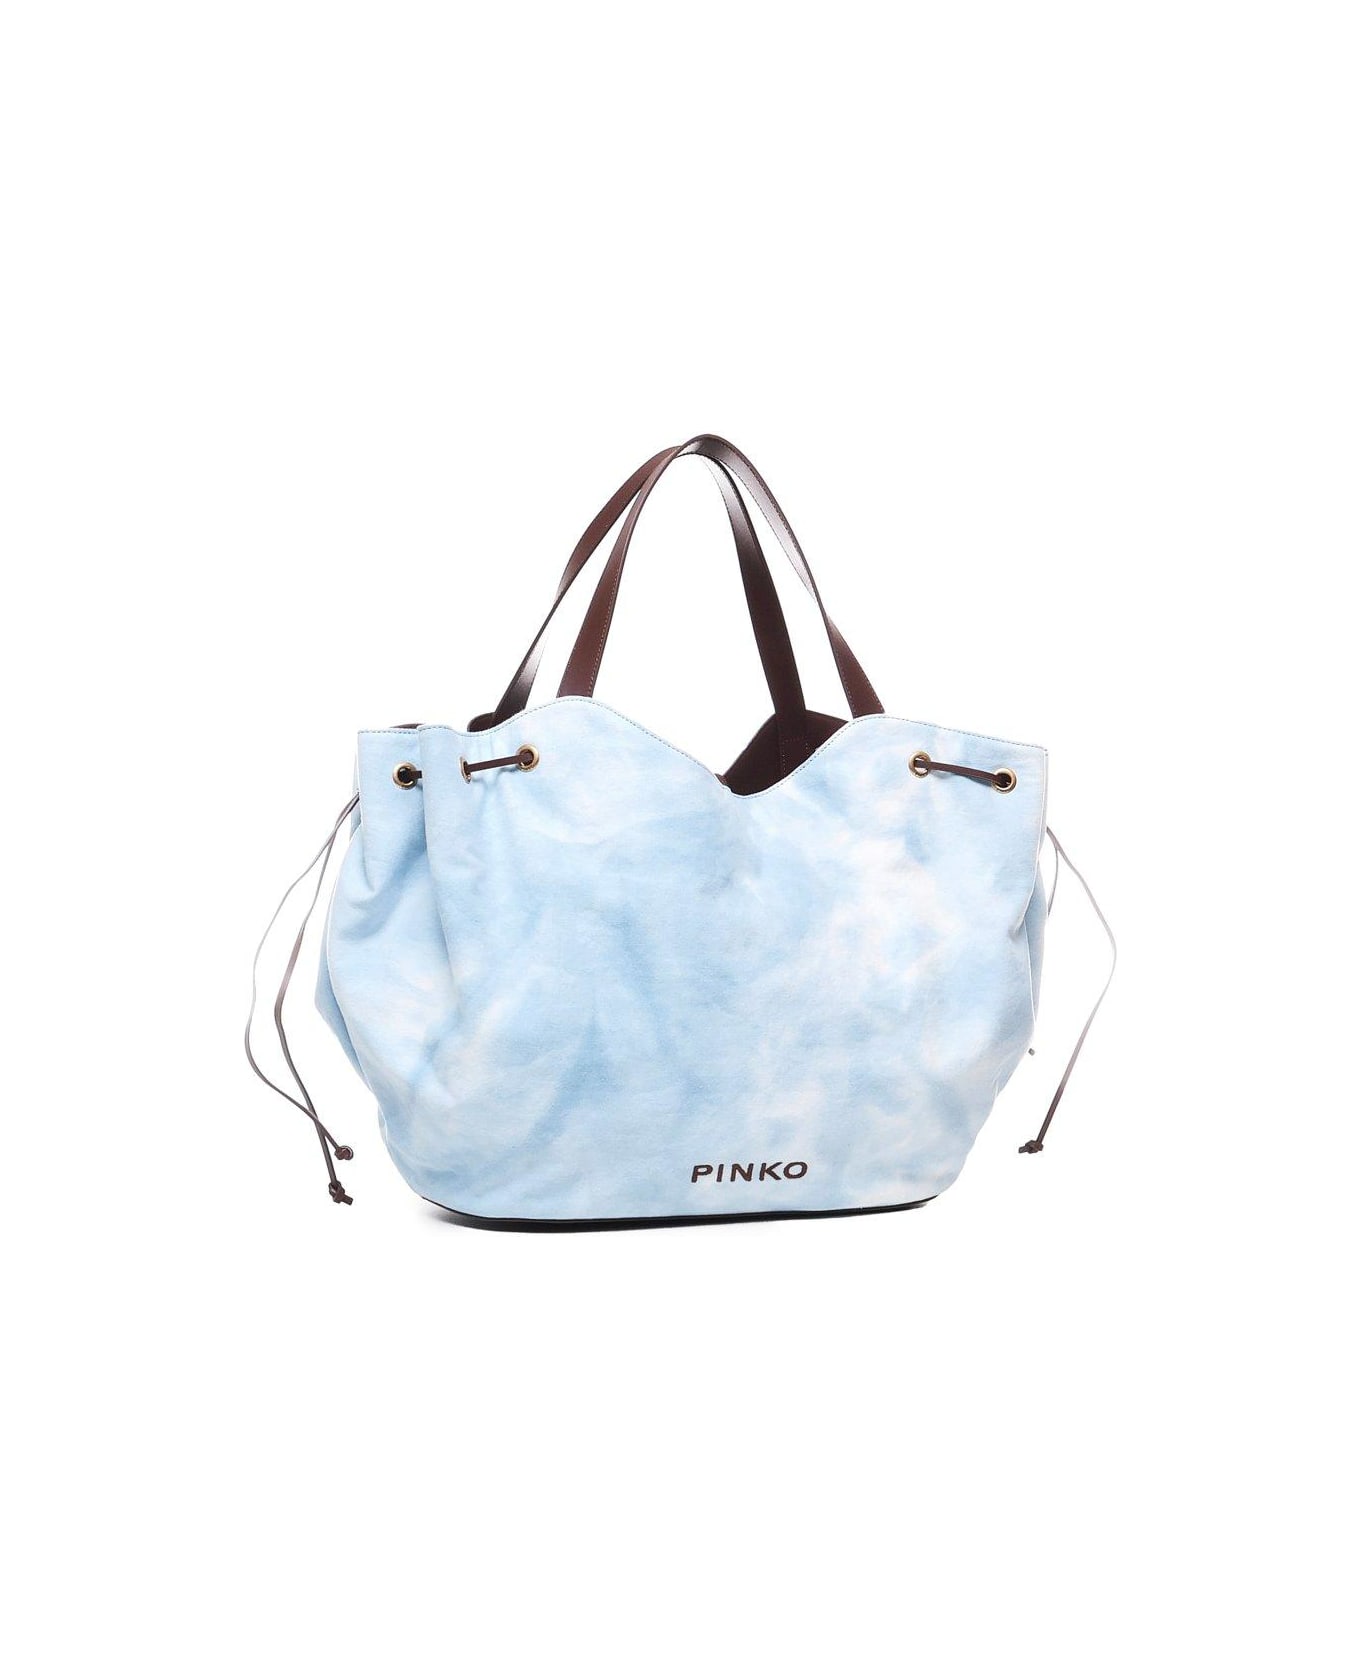 Pinko Logo Printed Drawstring Tote Bag - Cool blue